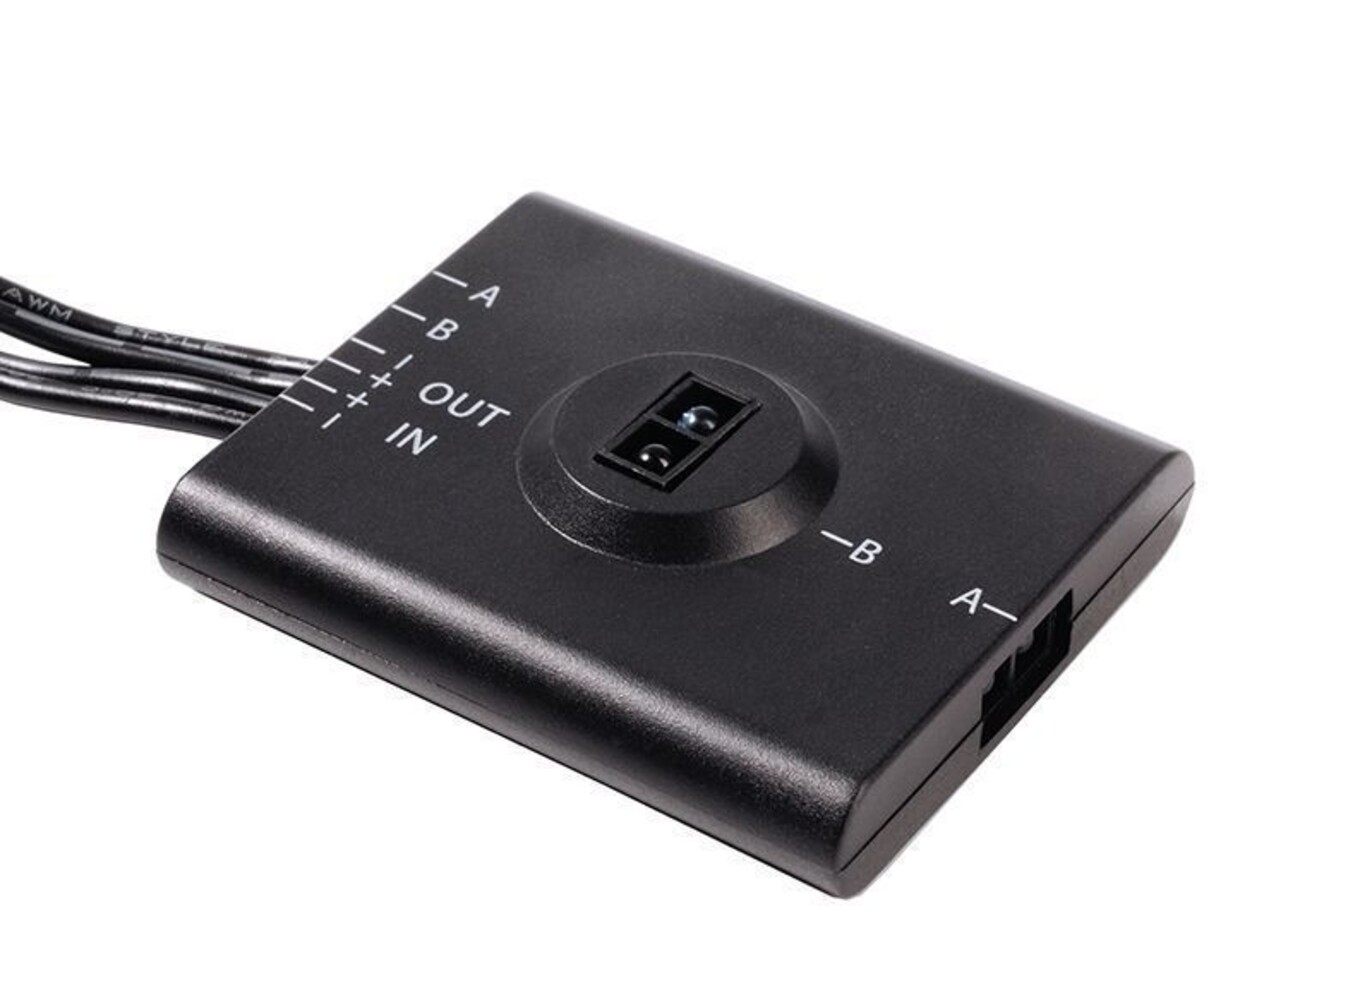 Hochwertiger Infrarot-Sensor von Deko-Light in schwarz mit einer Leistung von 36 Watt